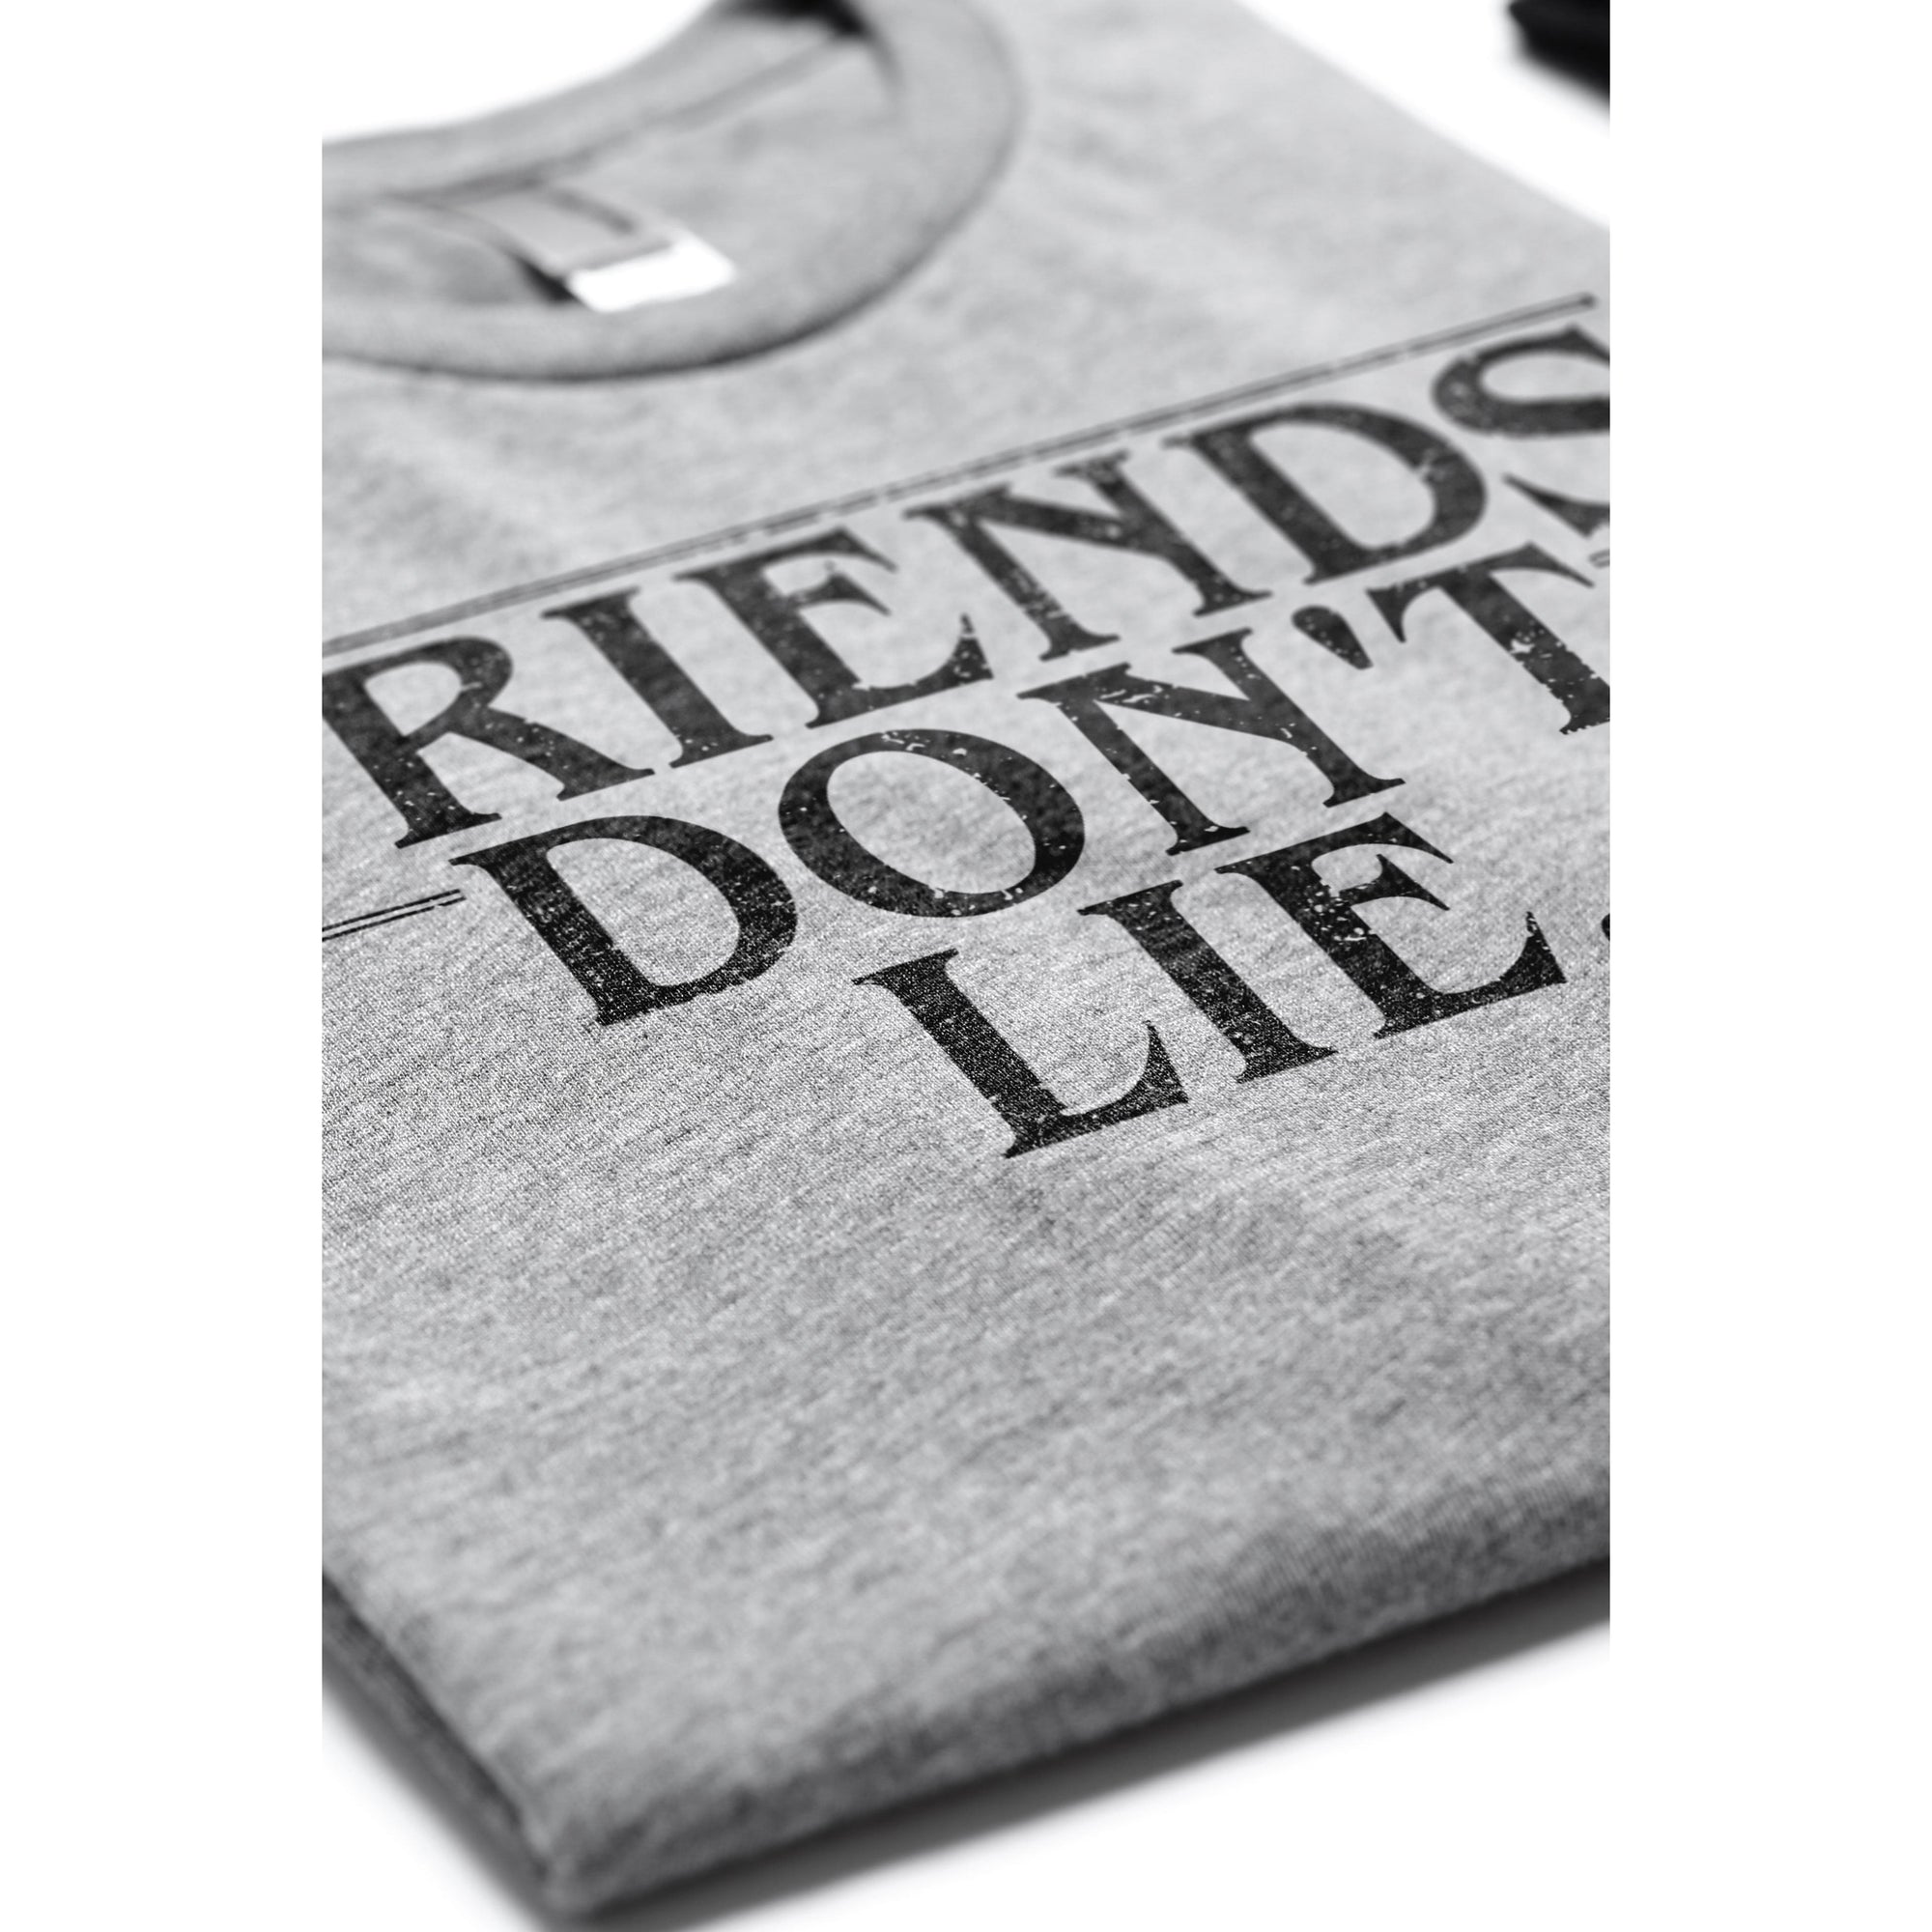 Friends Dont Lie Women's Relaxed Crewneck T-Shirt Top Tee Grey Closeup Image